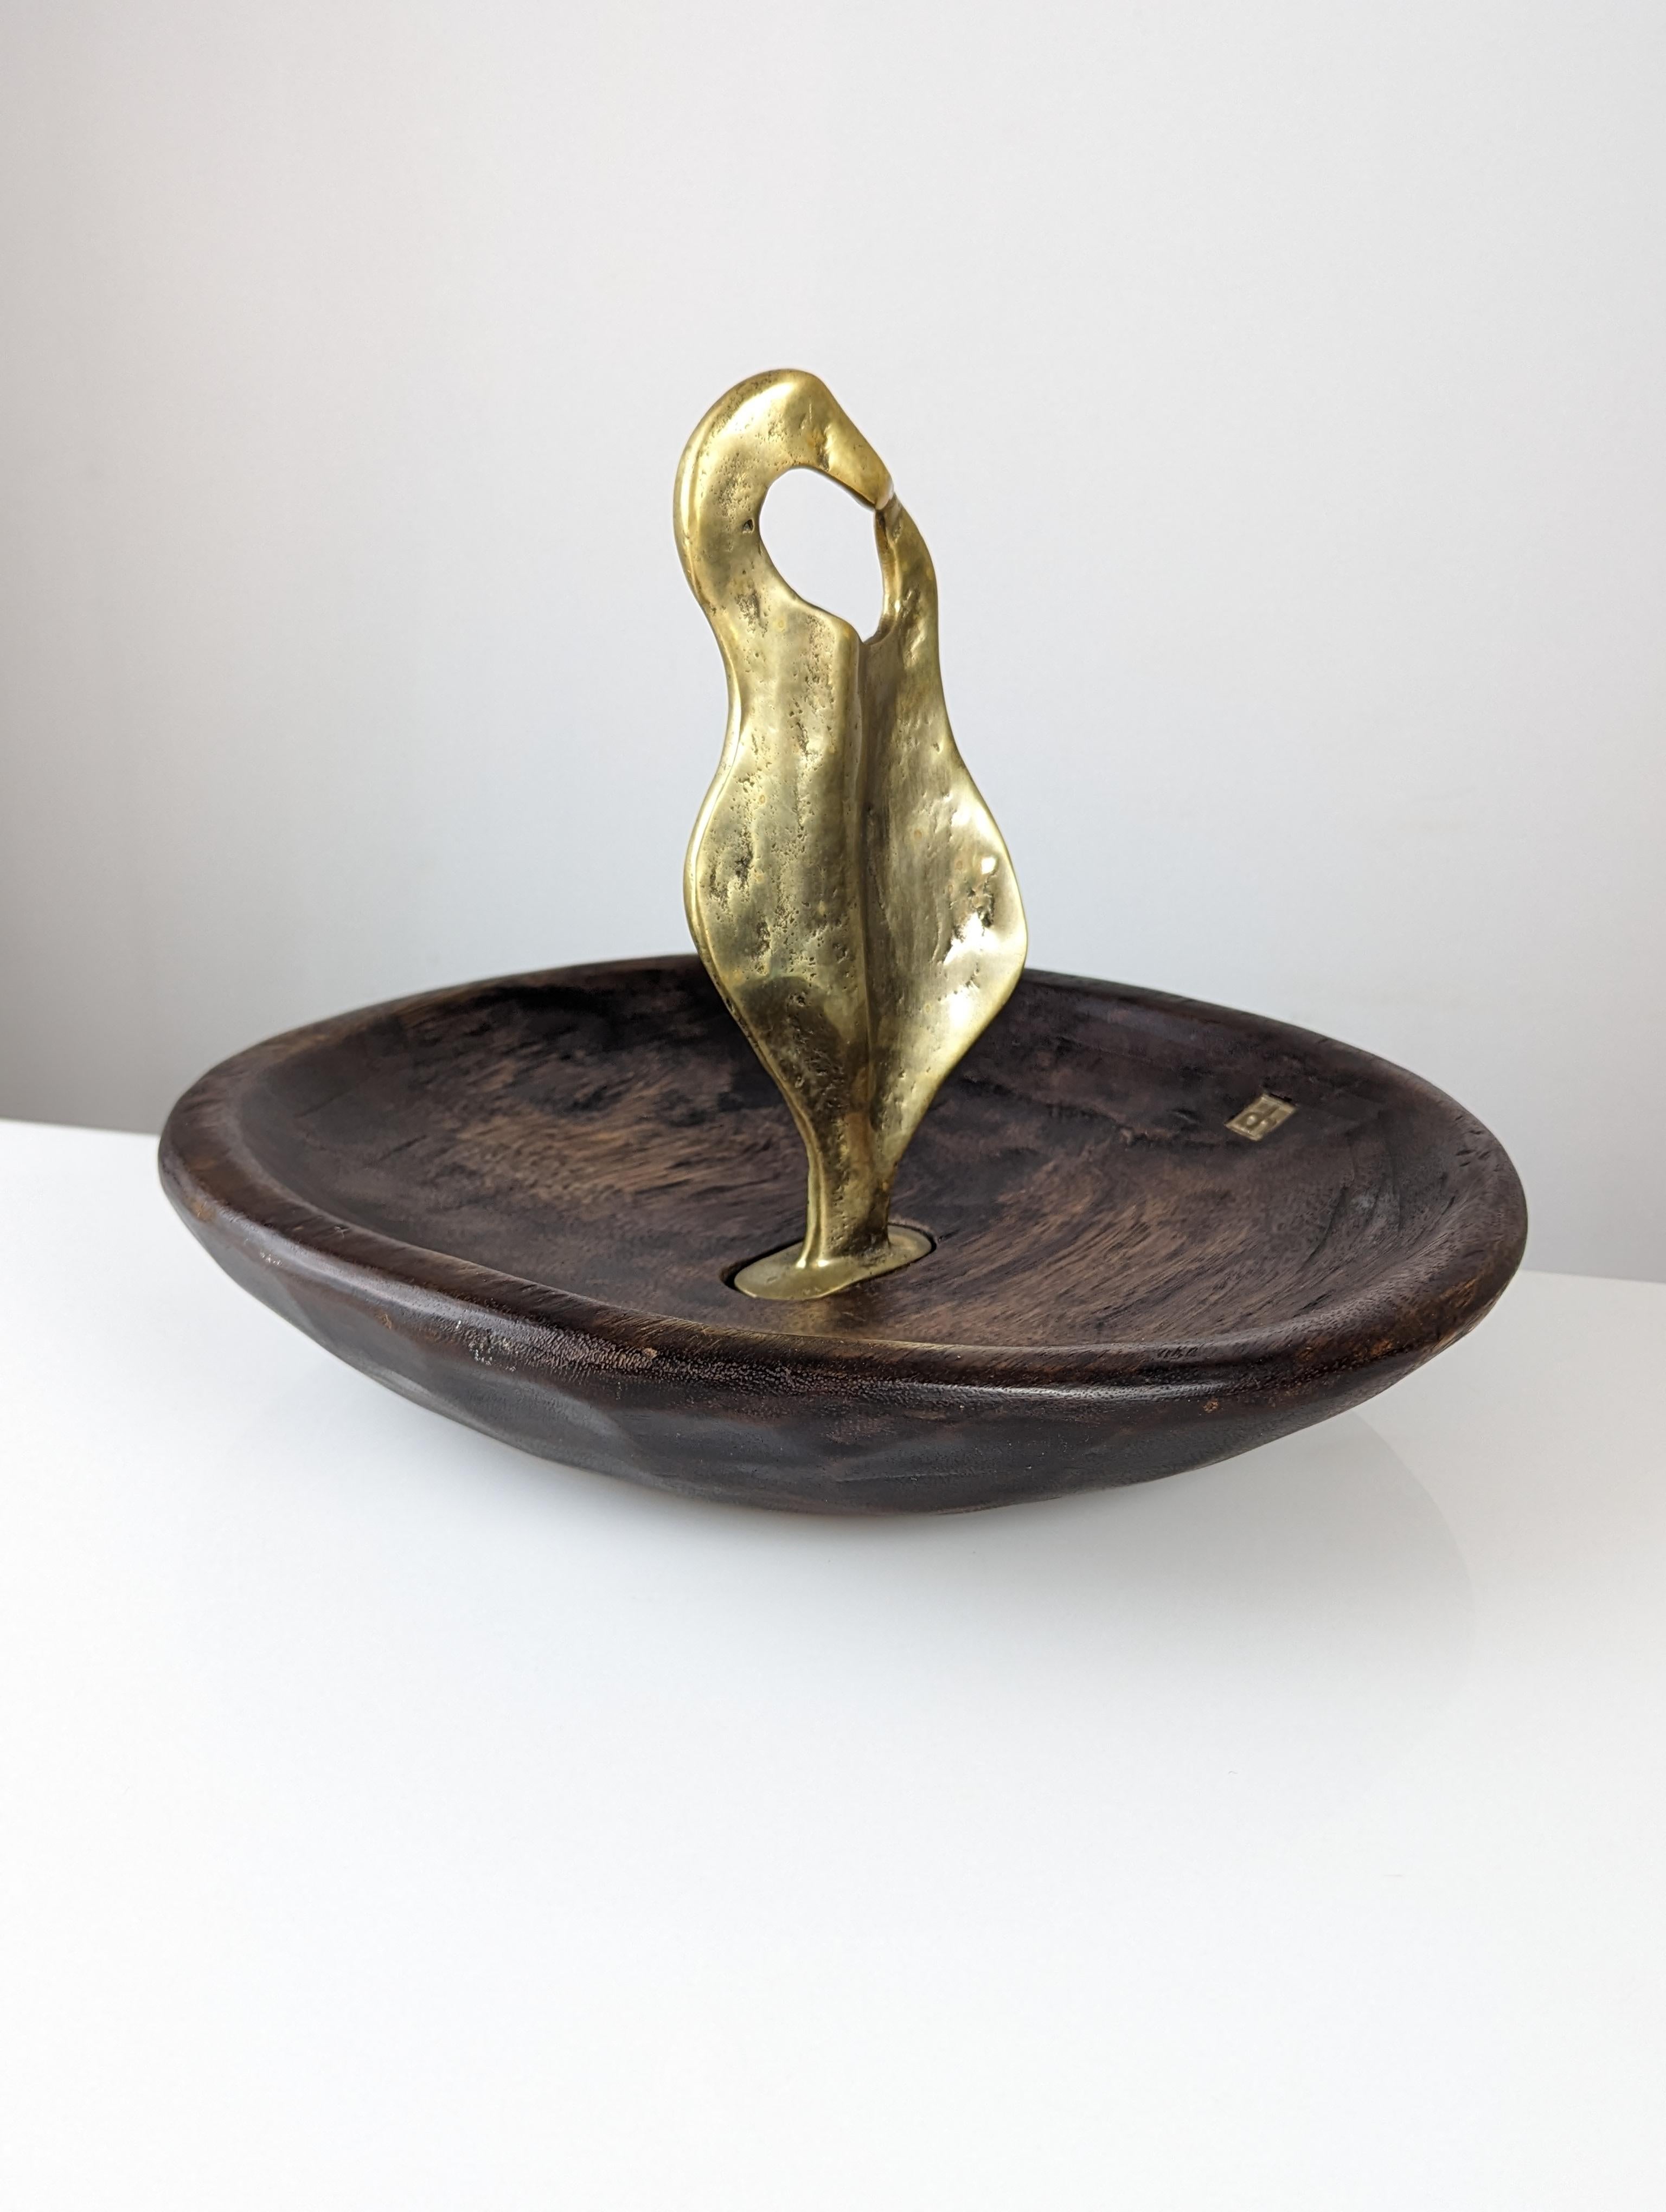 Außergewöhnliche skulpturale Obstschale von David Marshall, ein handgefertigtes Meisterwerk, das die Wärme von Holz mit der Raffinesse von Bronze verbindet. Dieses Stück spiegelt das handwerkliche Können des Künstlers wider, vom sorgfältig